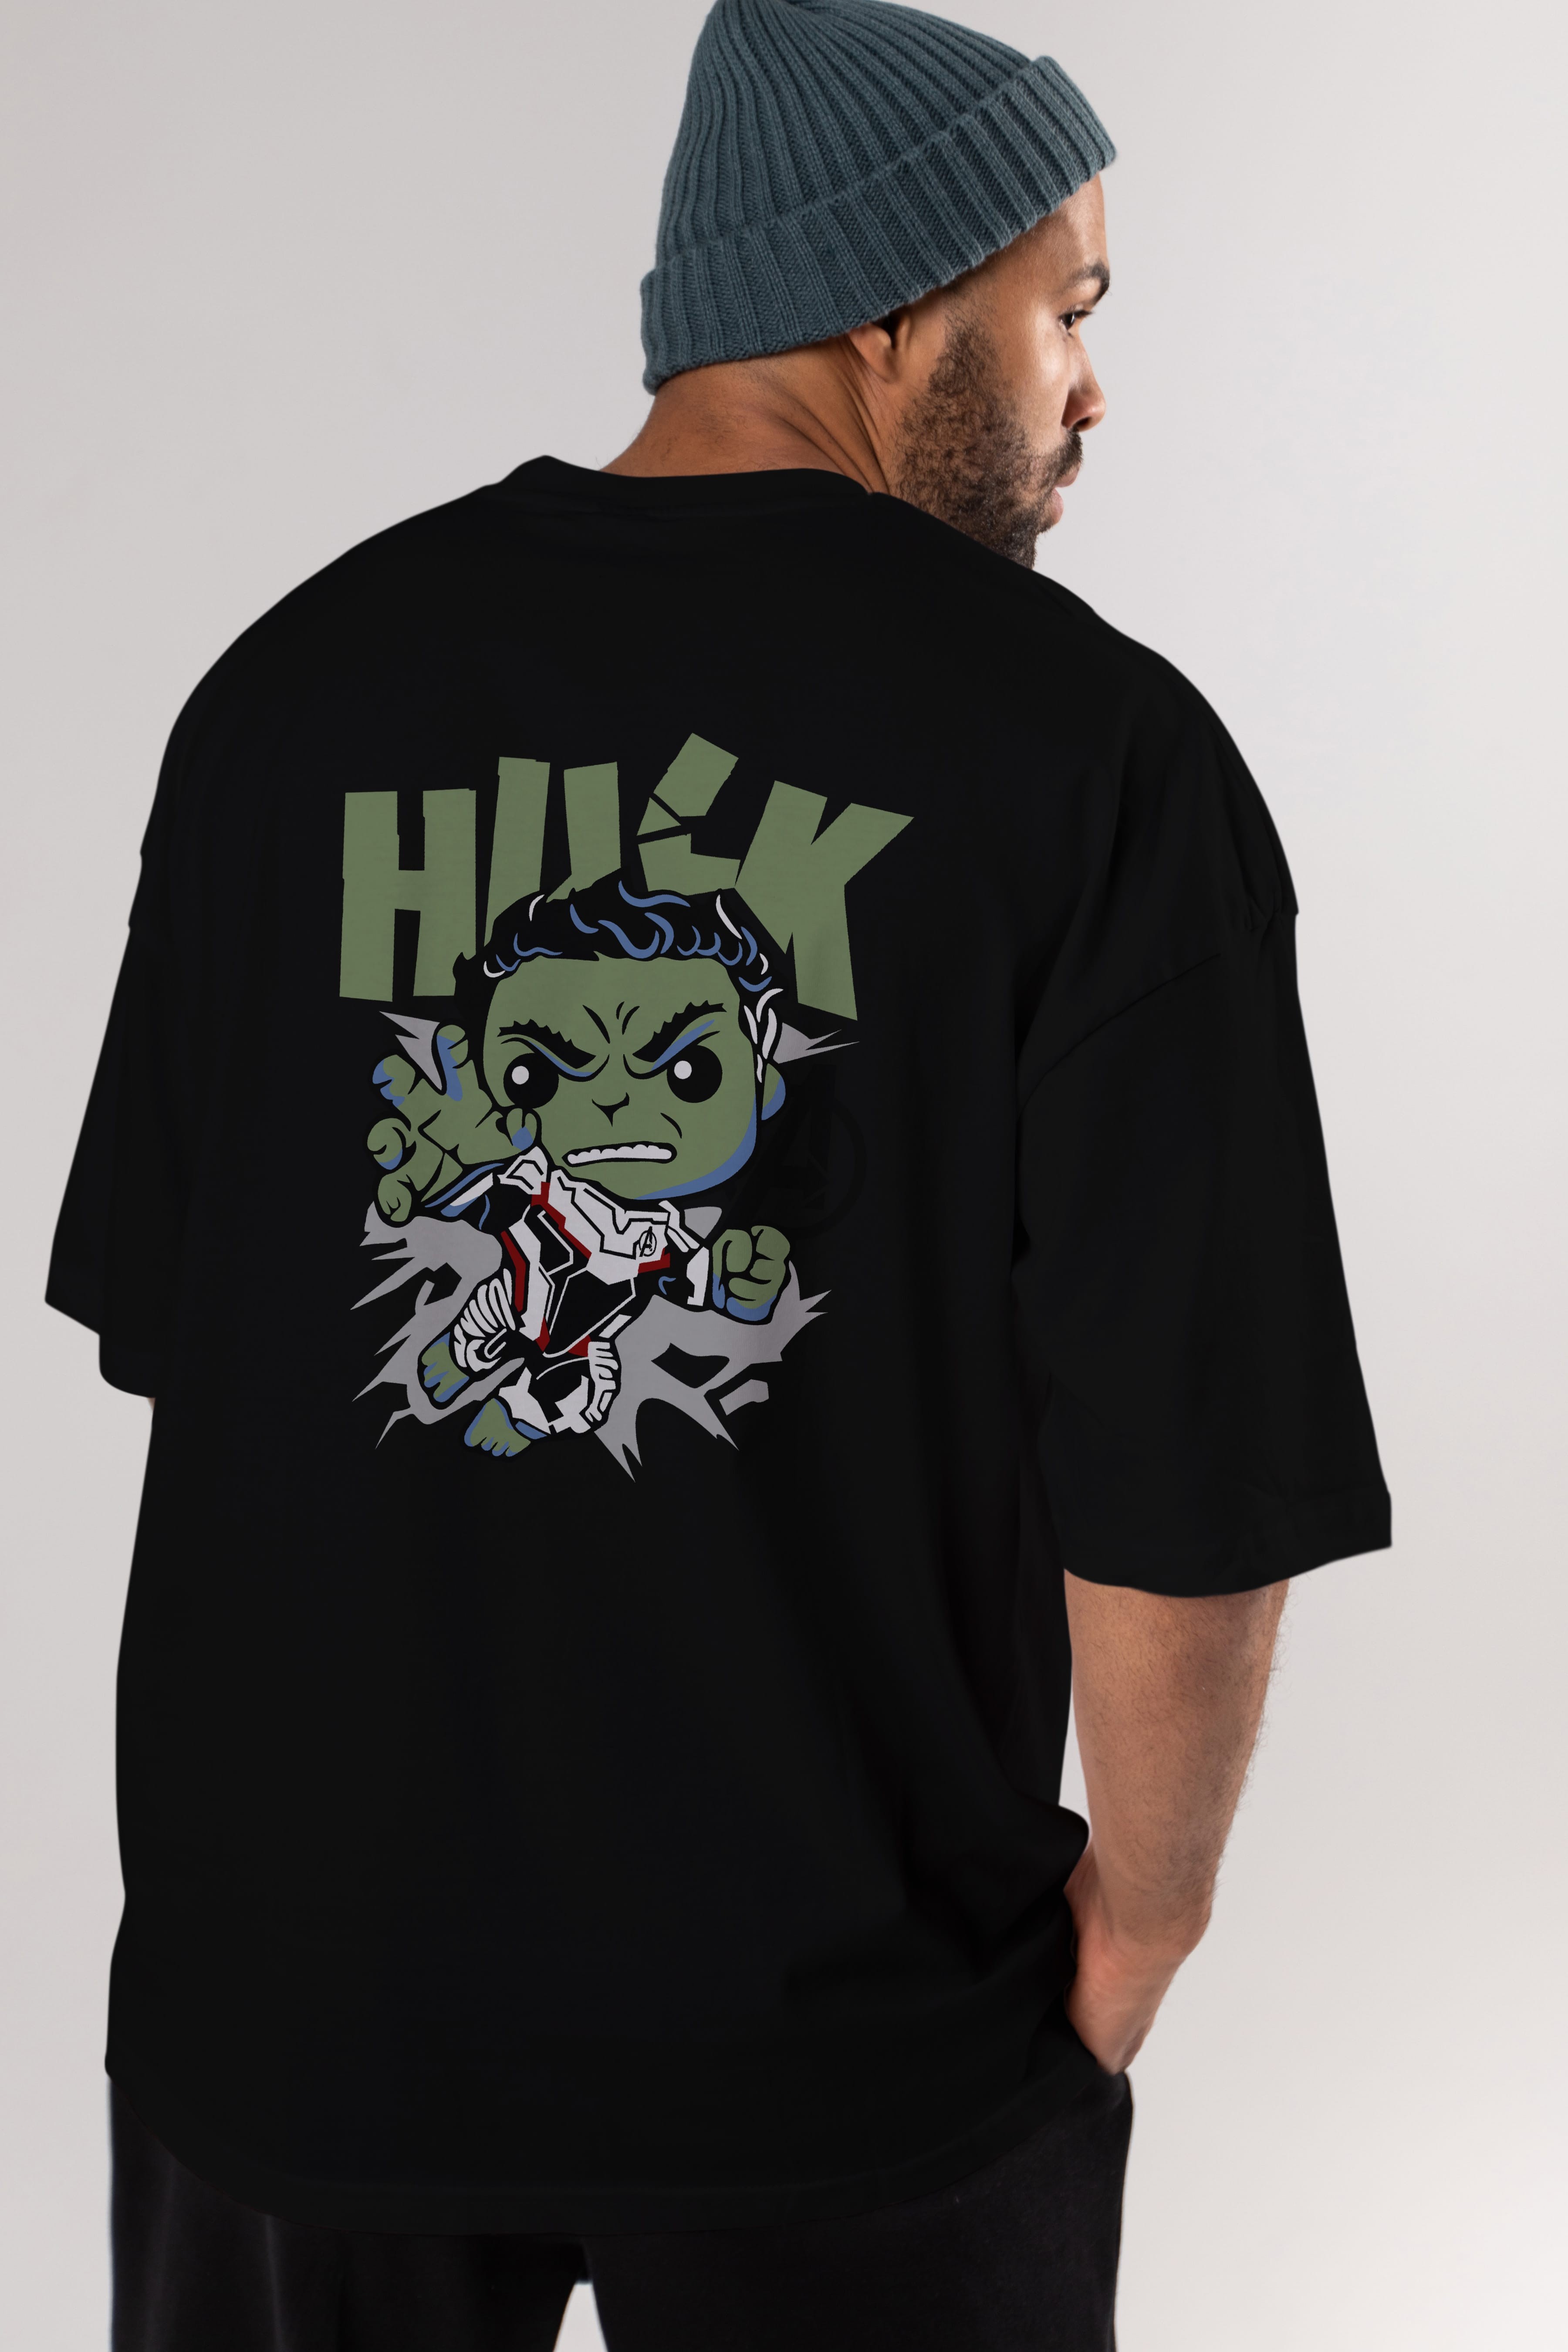 Hulk (8) Arka Baskılı Oversize t-shirt Erkek Kadın Unisex %100 Pamuk Bisiklet Yaka tişort